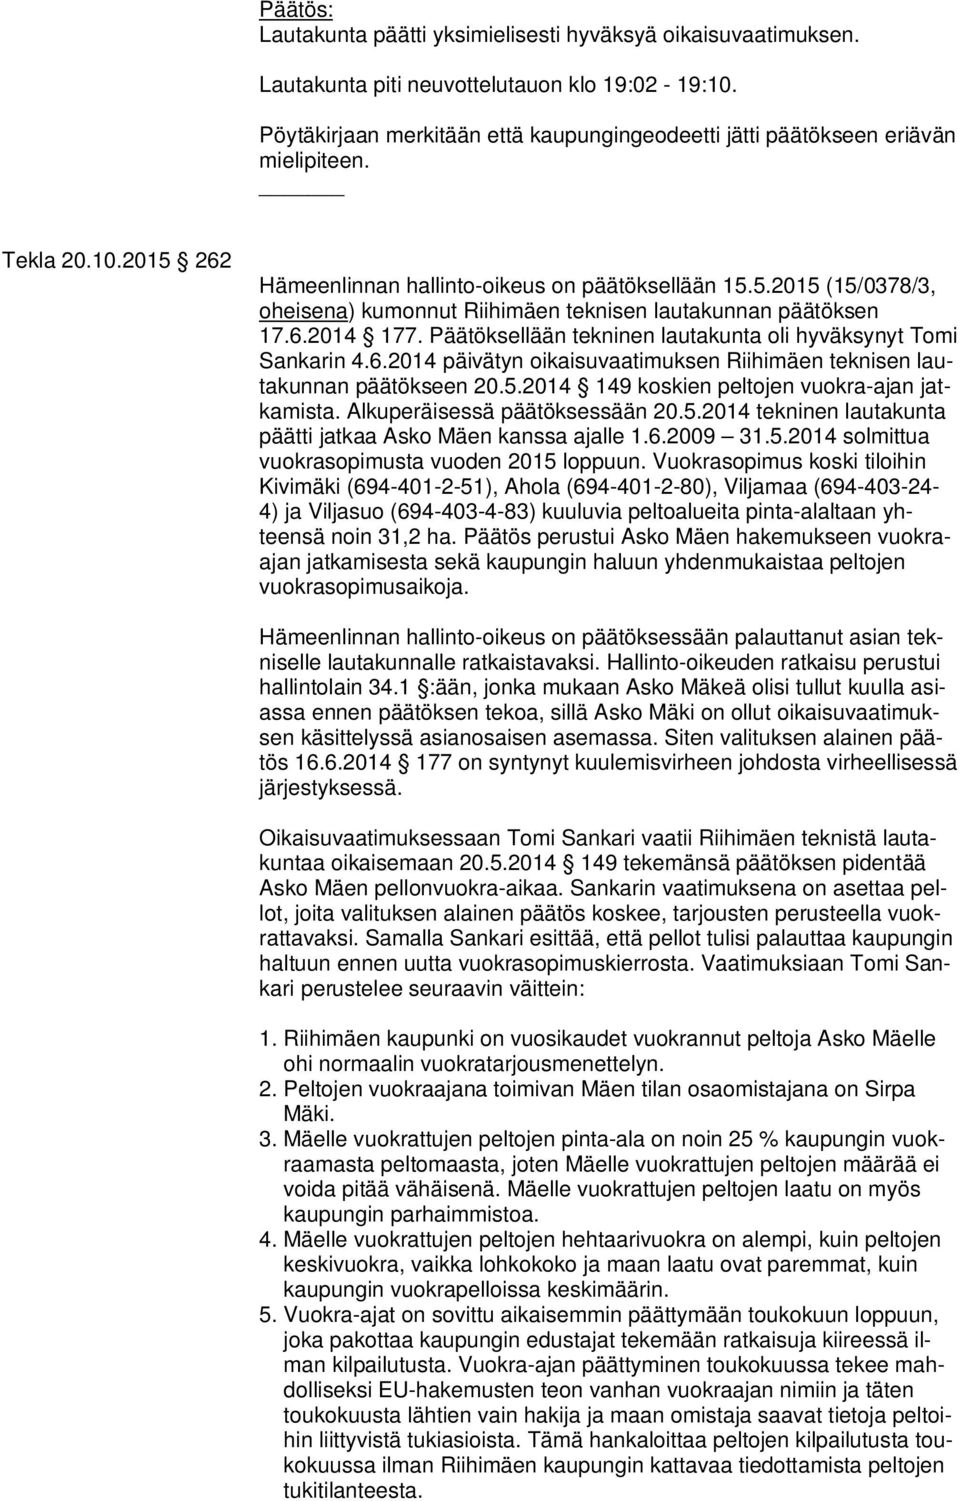 6.2014 177. Päätöksellään tekninen lautakunta oli hyväksynyt Tomi Sankarin 4.6.2014 päivätyn oikaisuvaatimuksen Riihimäen teknisen lautakunnan päätökseen 20.5.